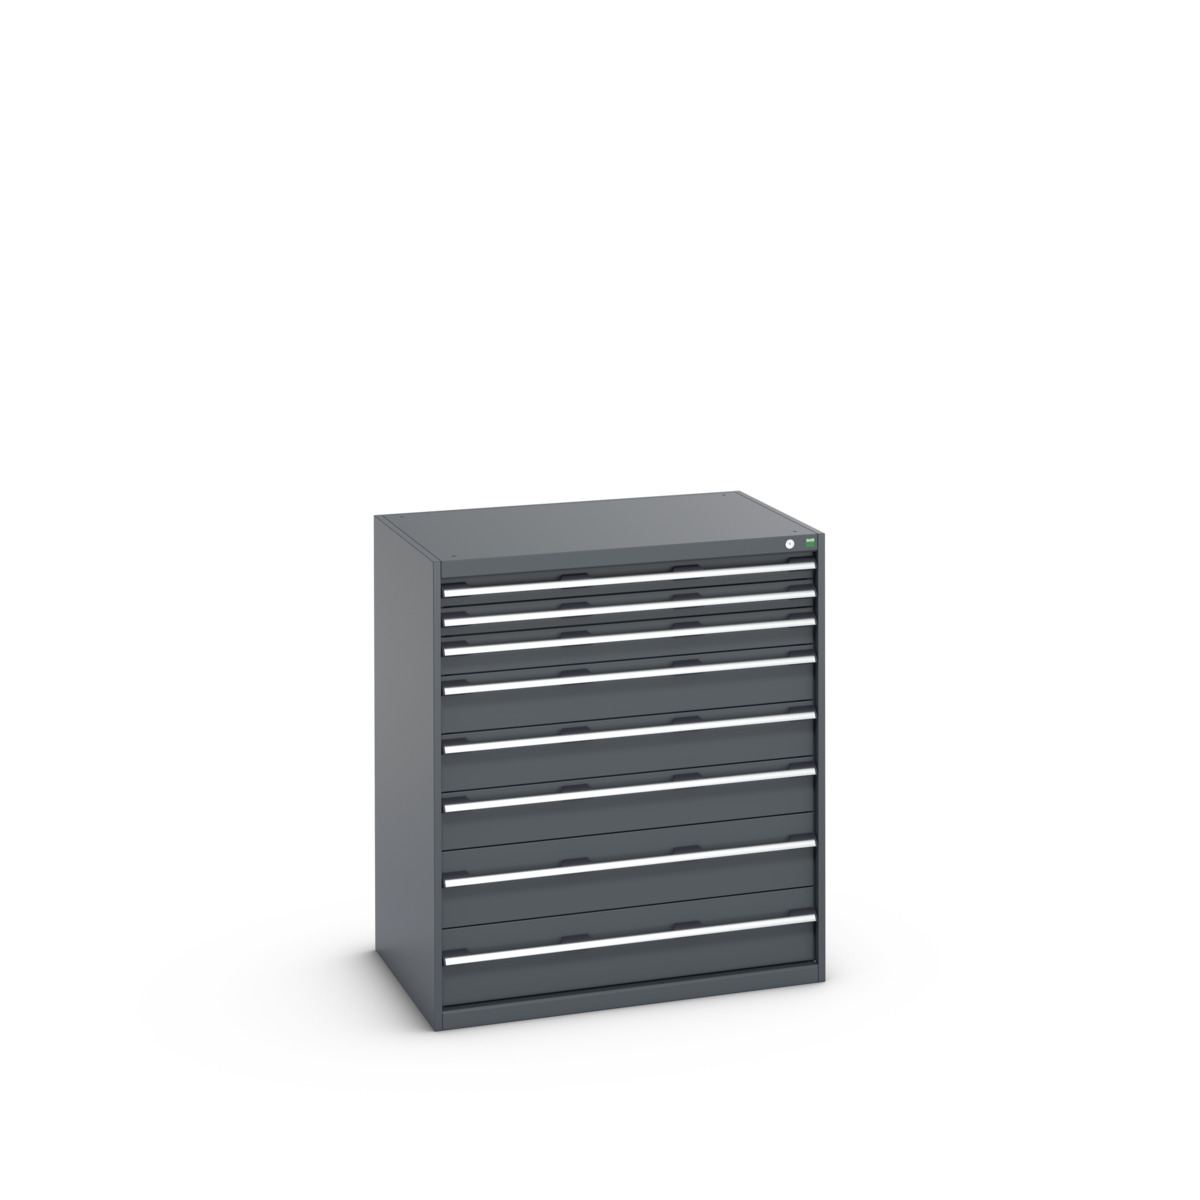 40029032.77V - cubio drawer cabinet